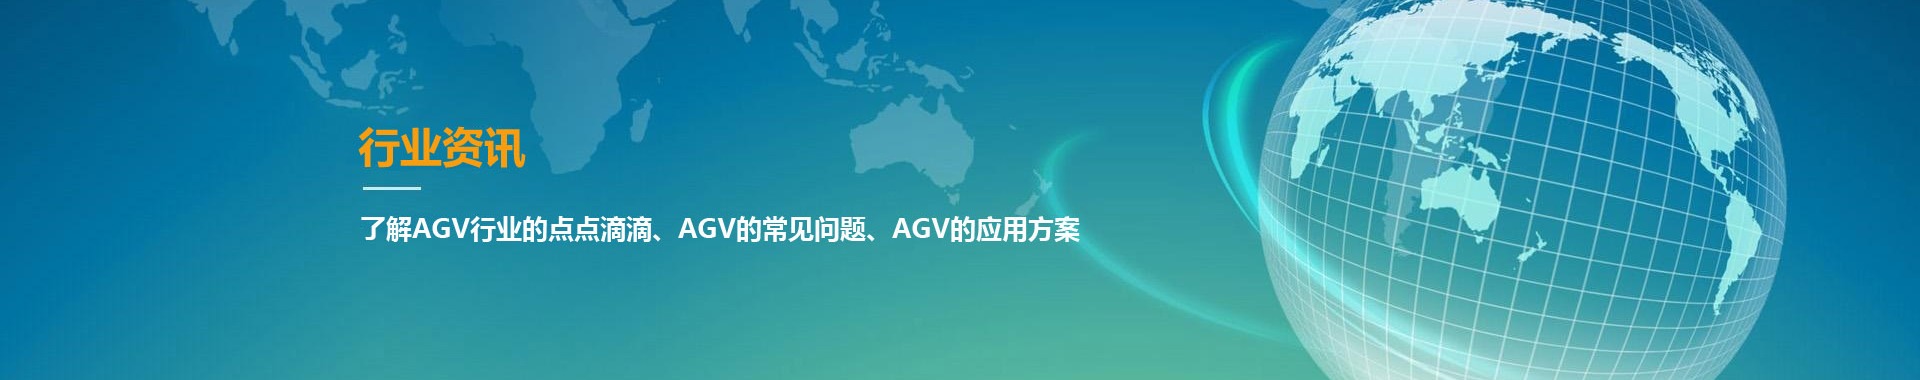 AGV行业资讯-AGV小车常见问题-AGV应用方案